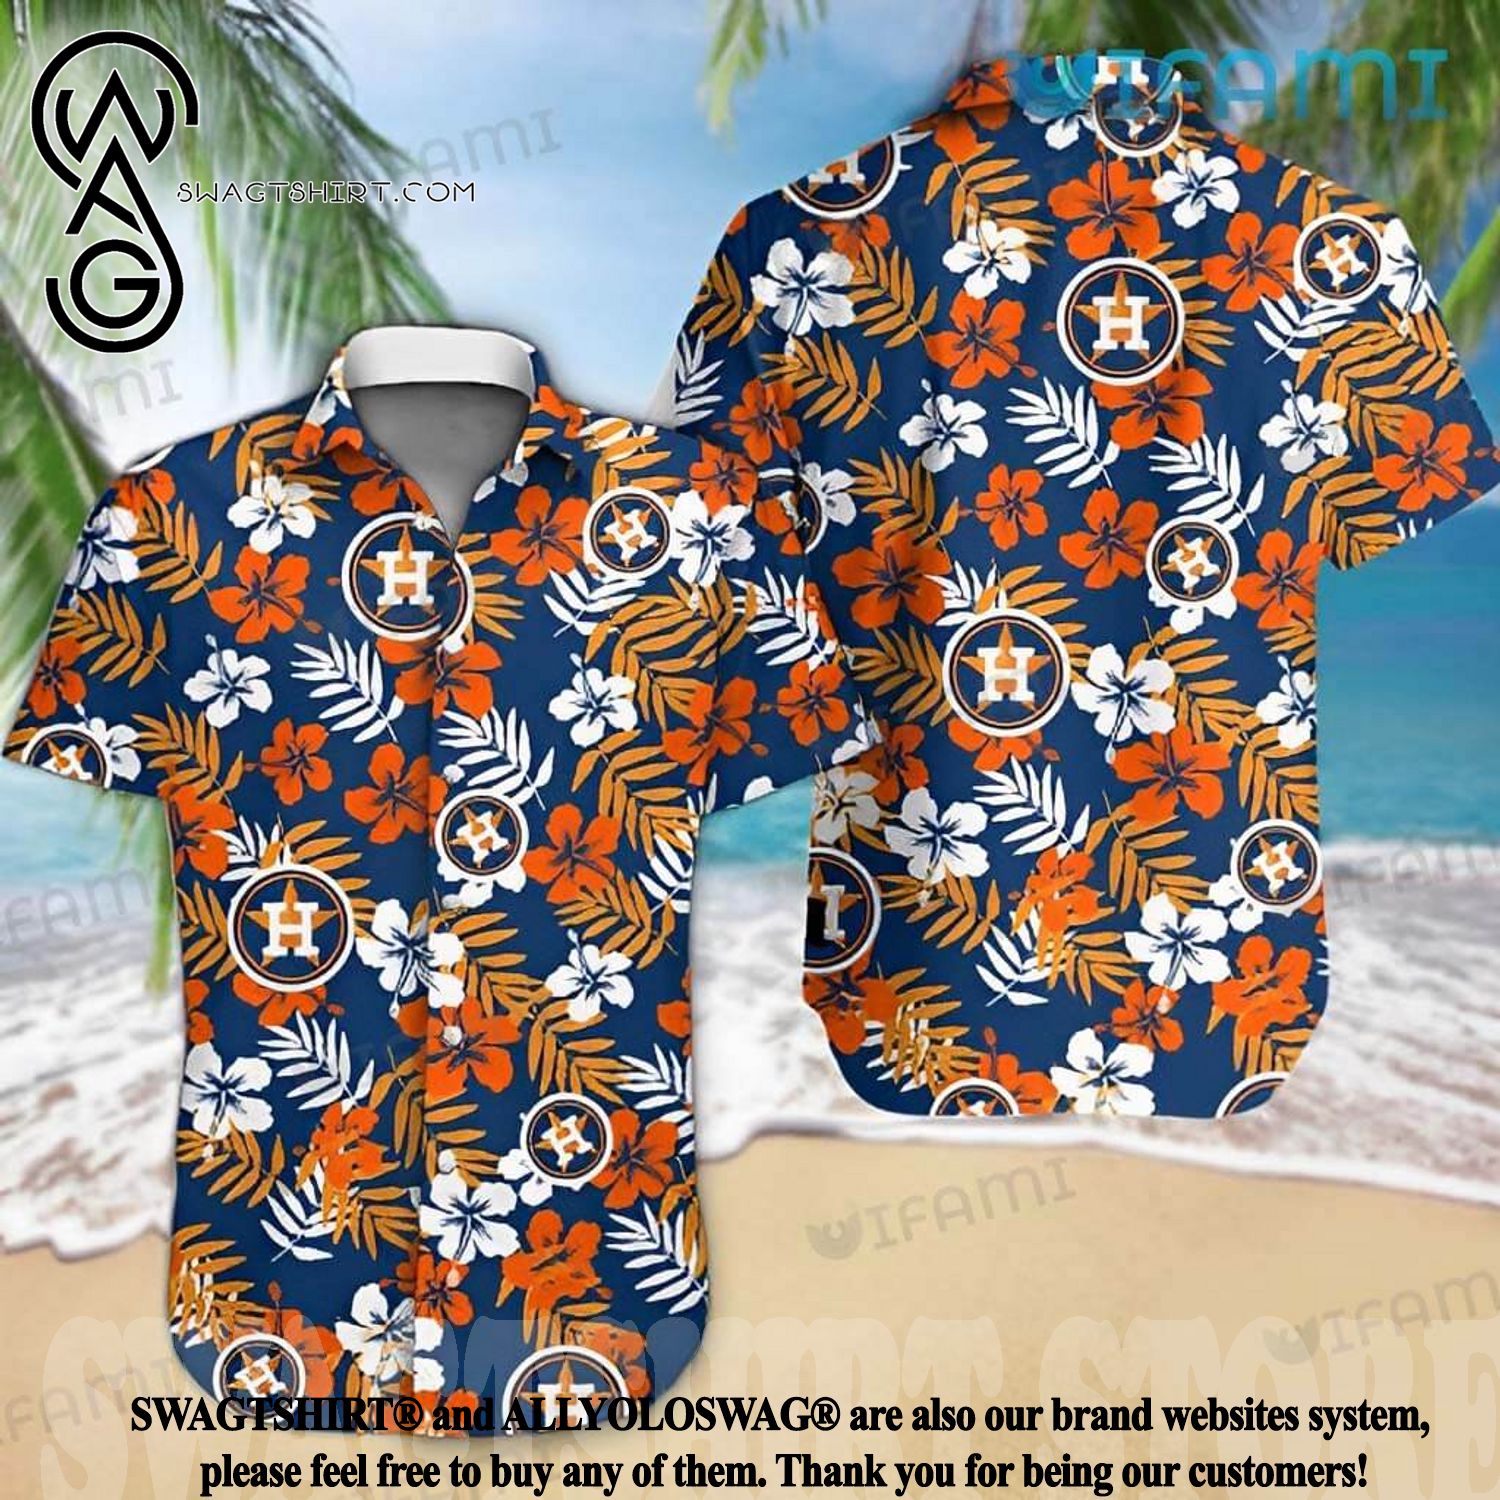 Houston Astros Snoopy Dog Orange Short Sleeves Hawaiian Shirt - Banantees